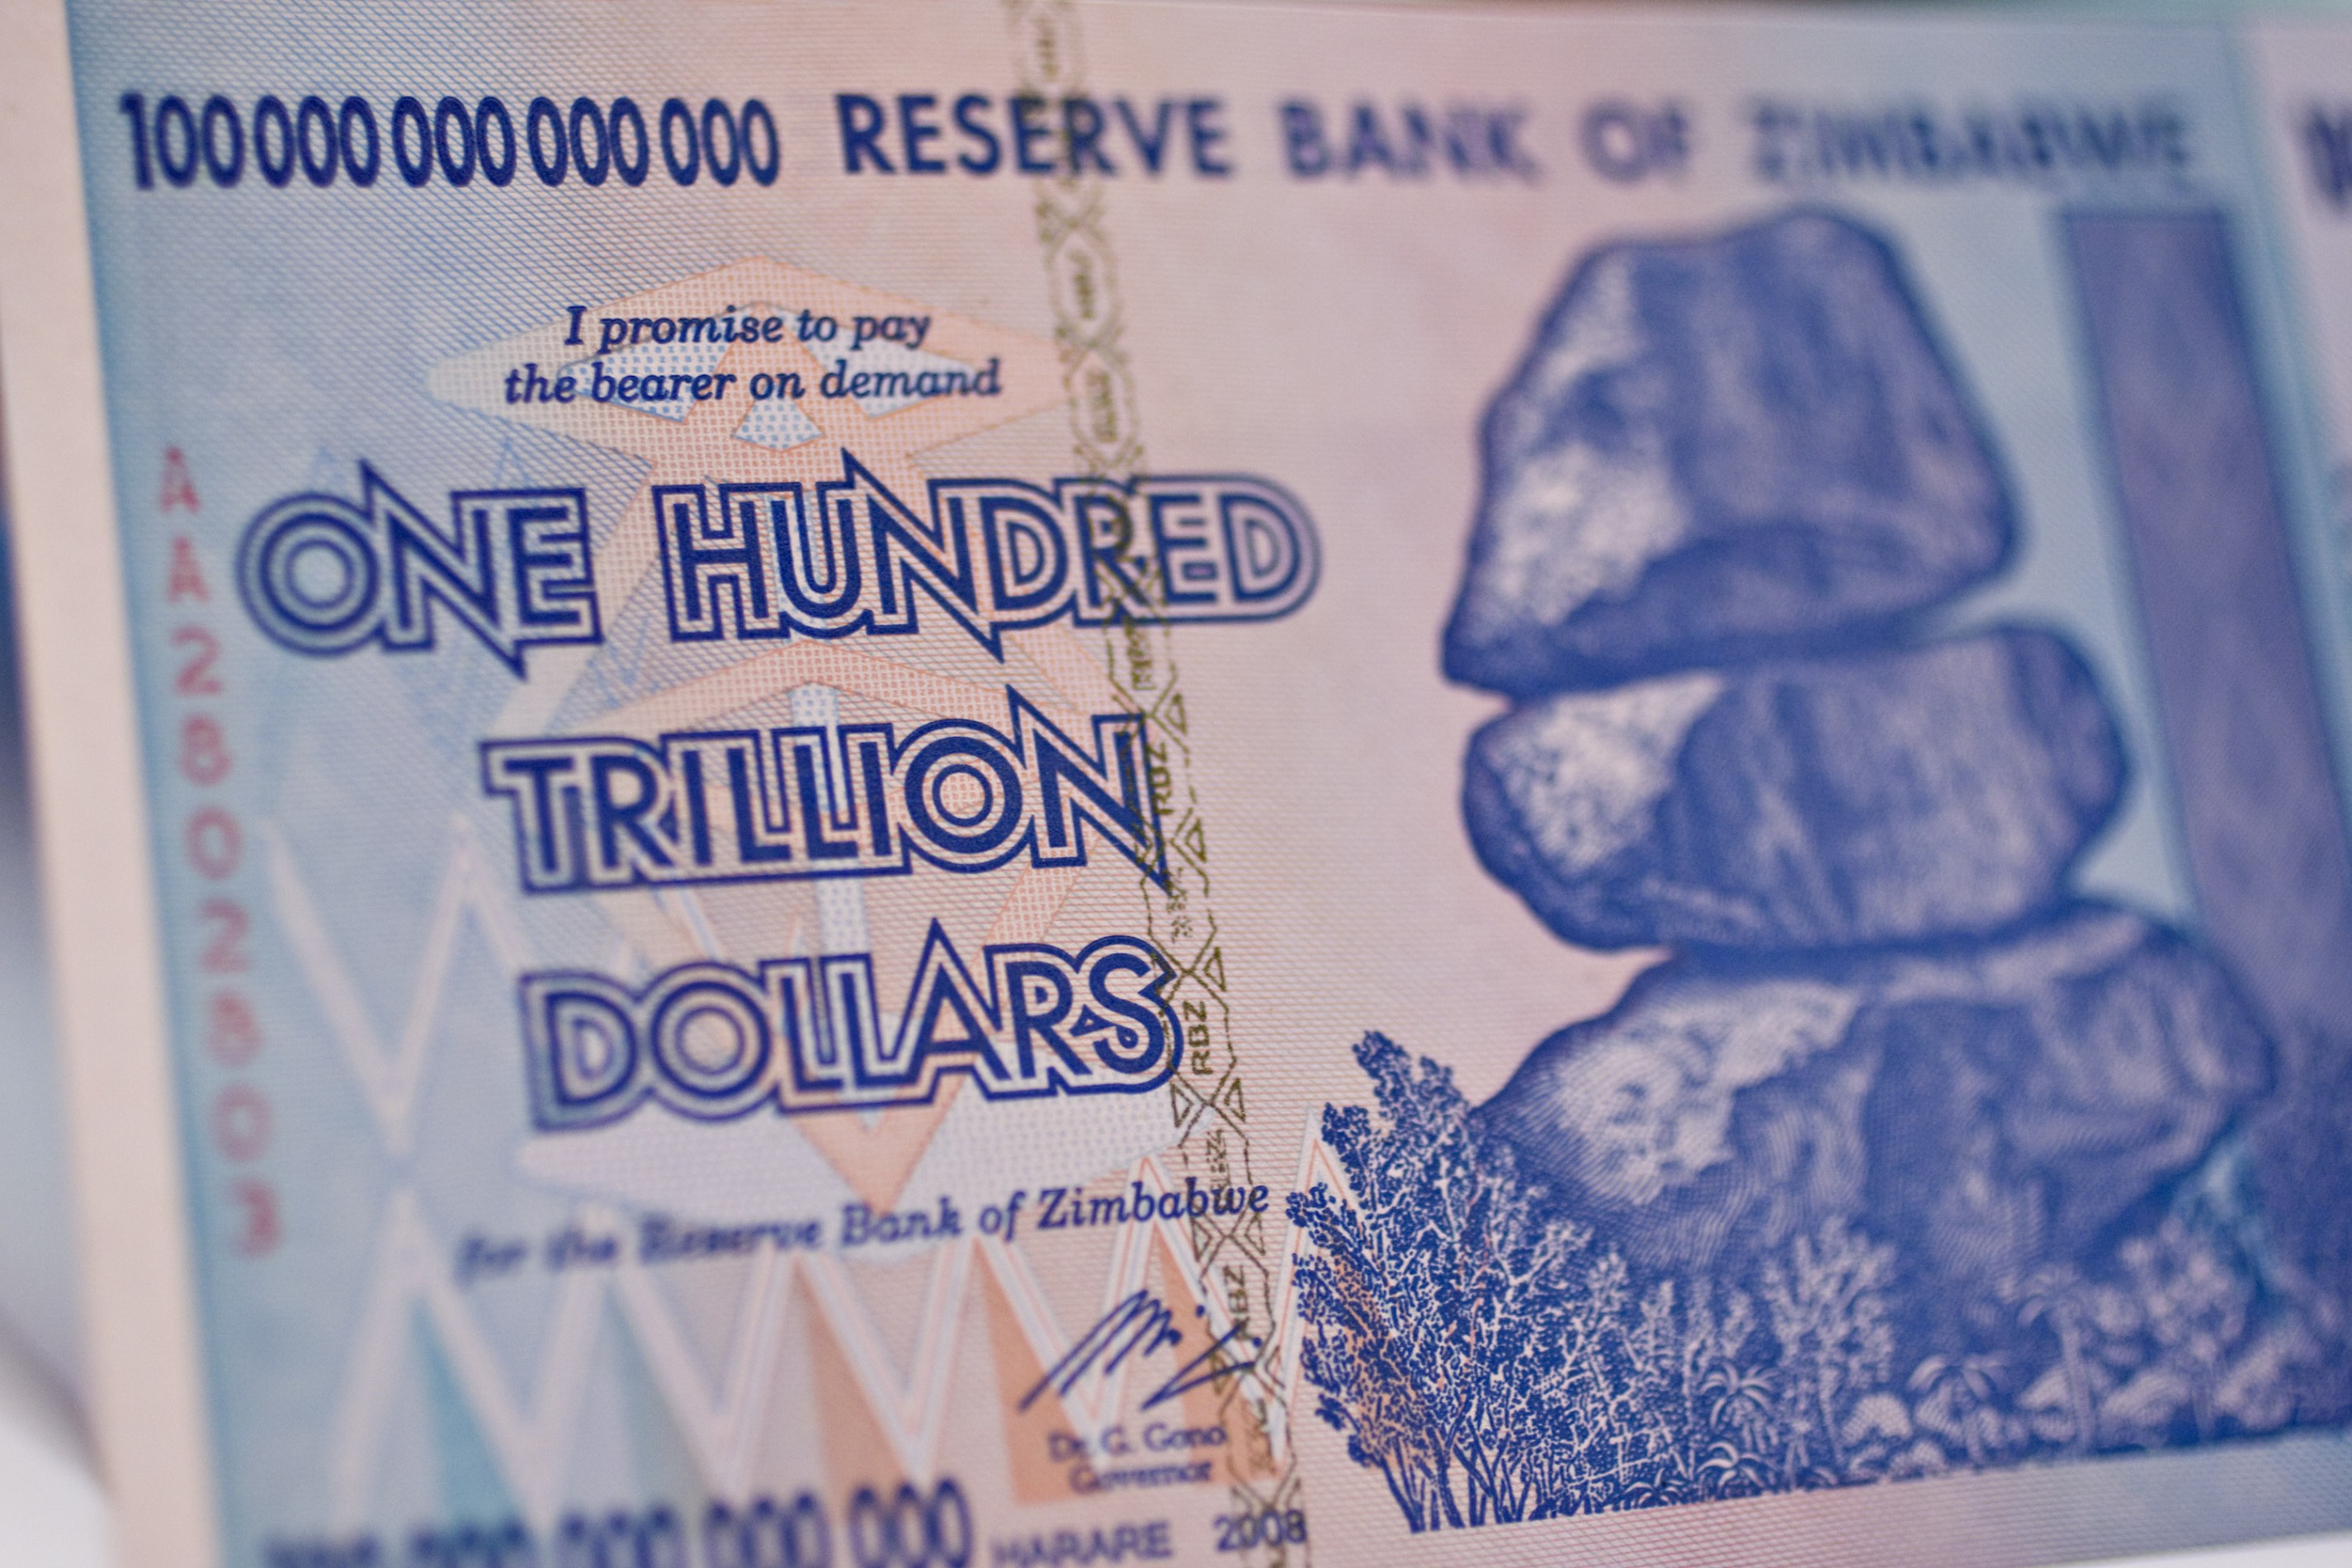 A Zimbabwe One Hundred Trillion Dollar Note